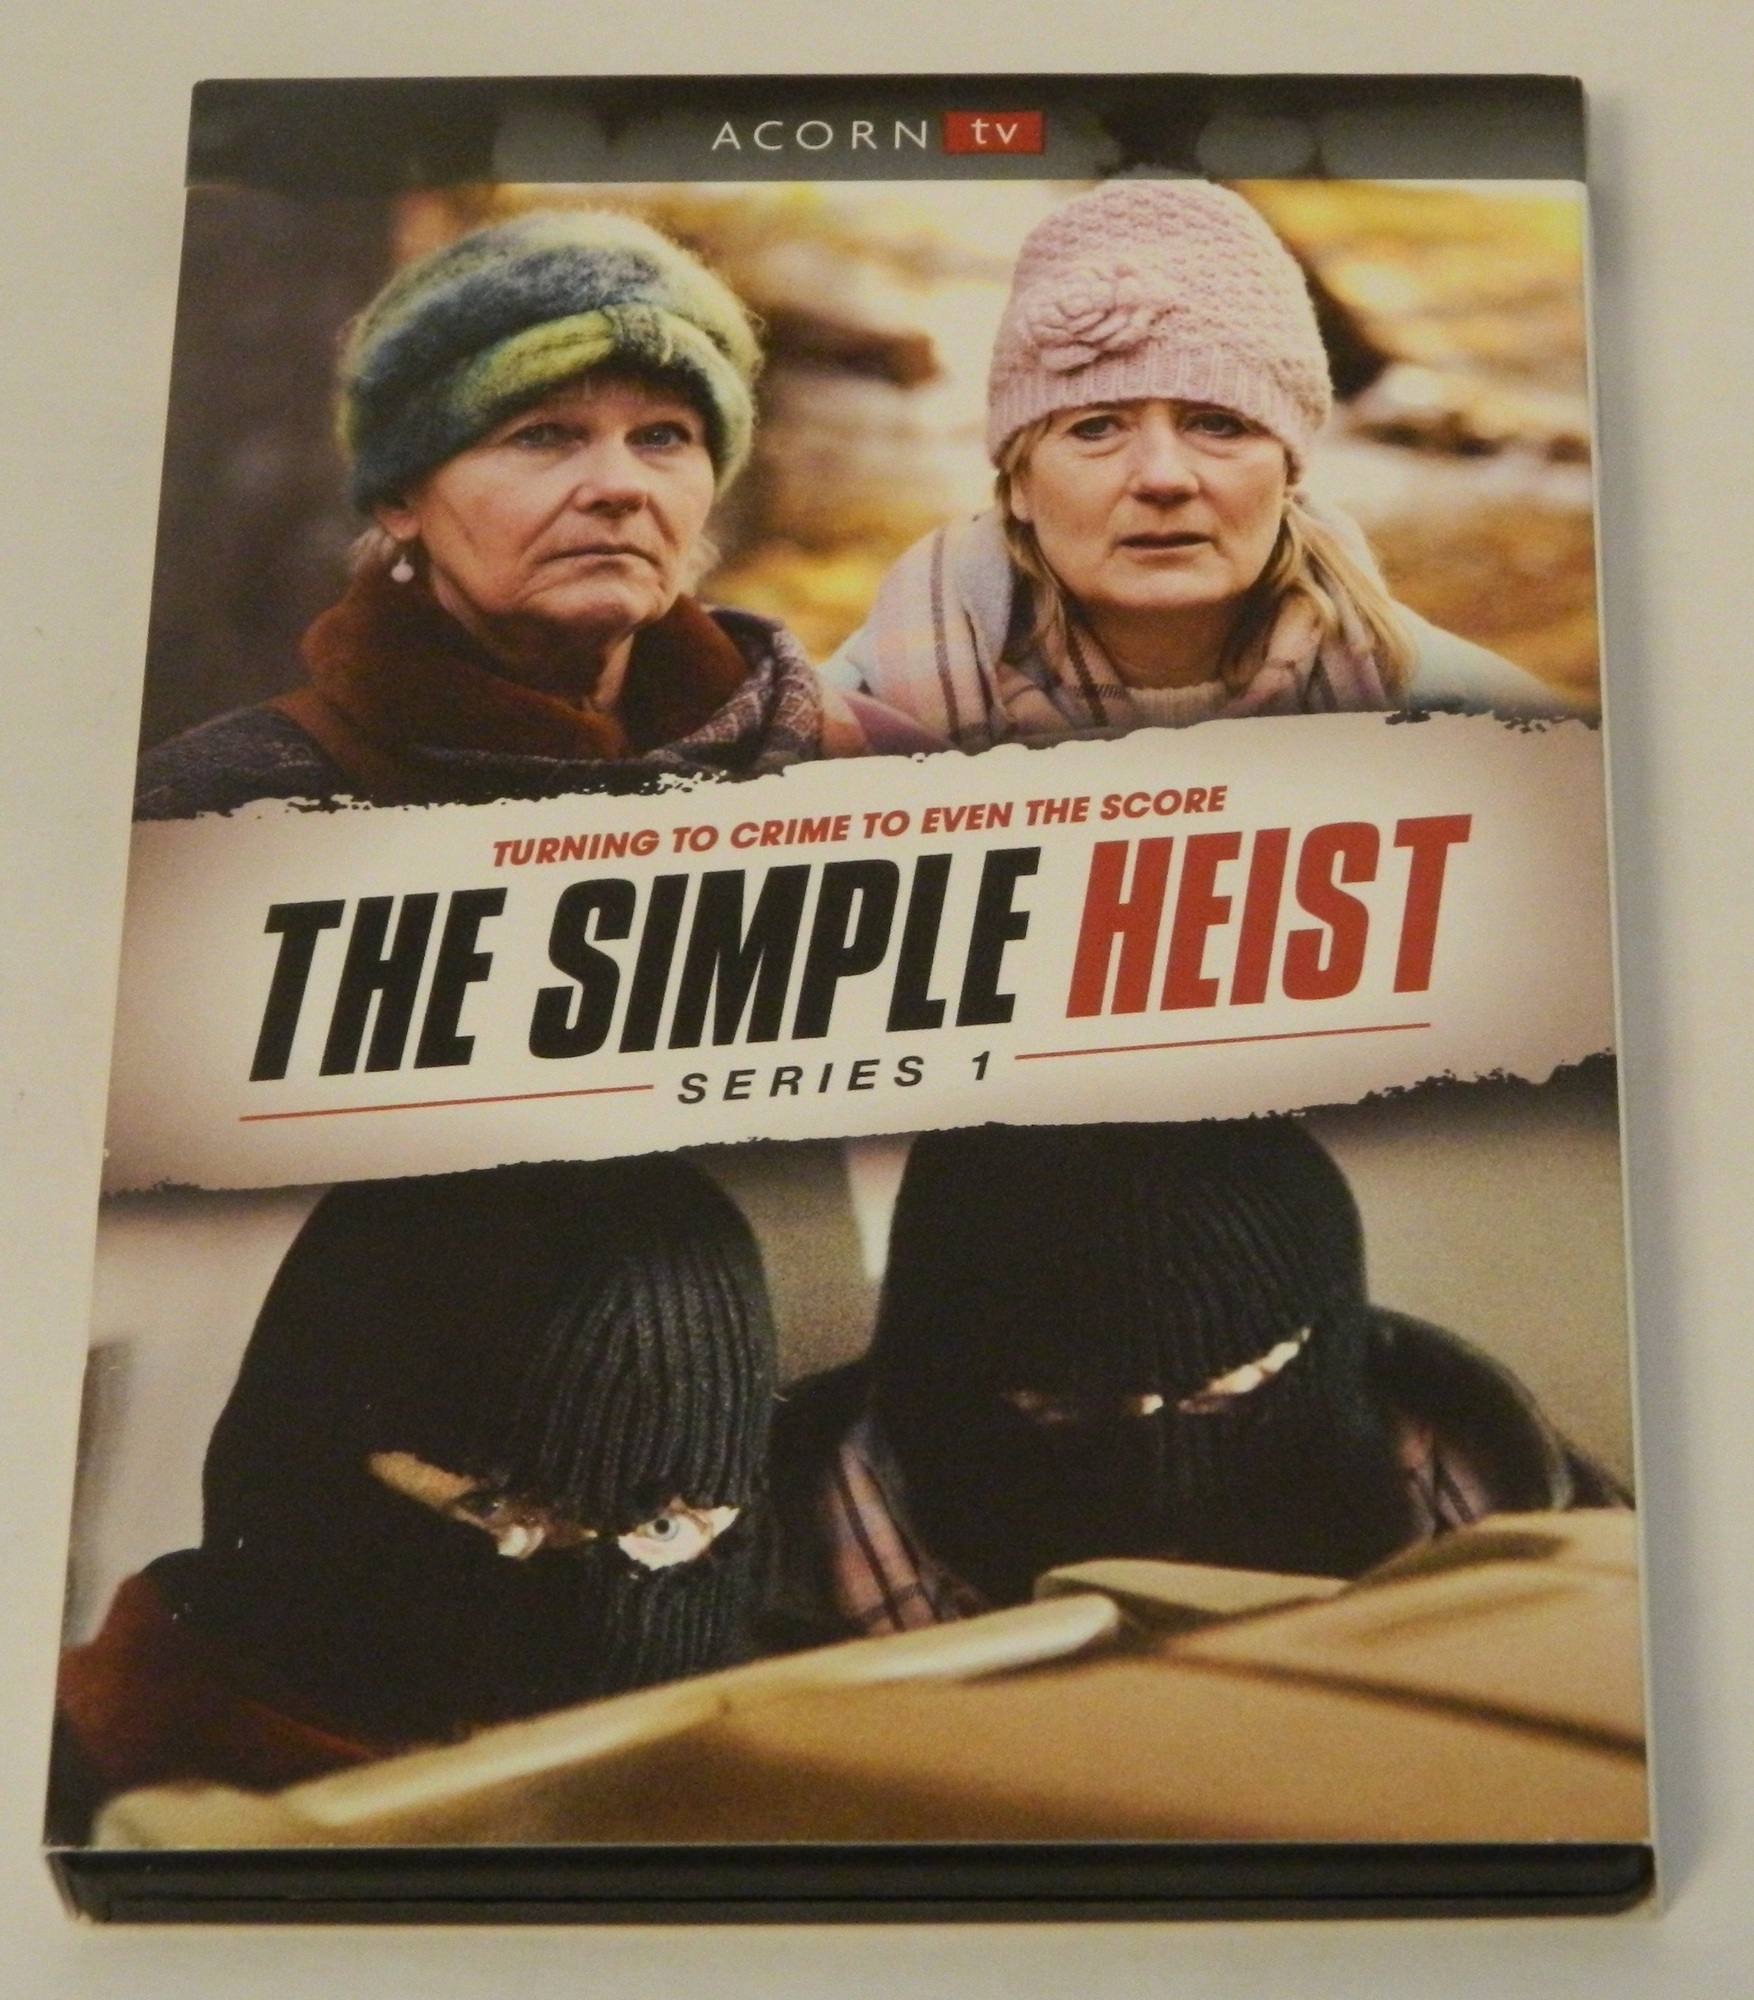 The Simple Heist Series 1 DVD